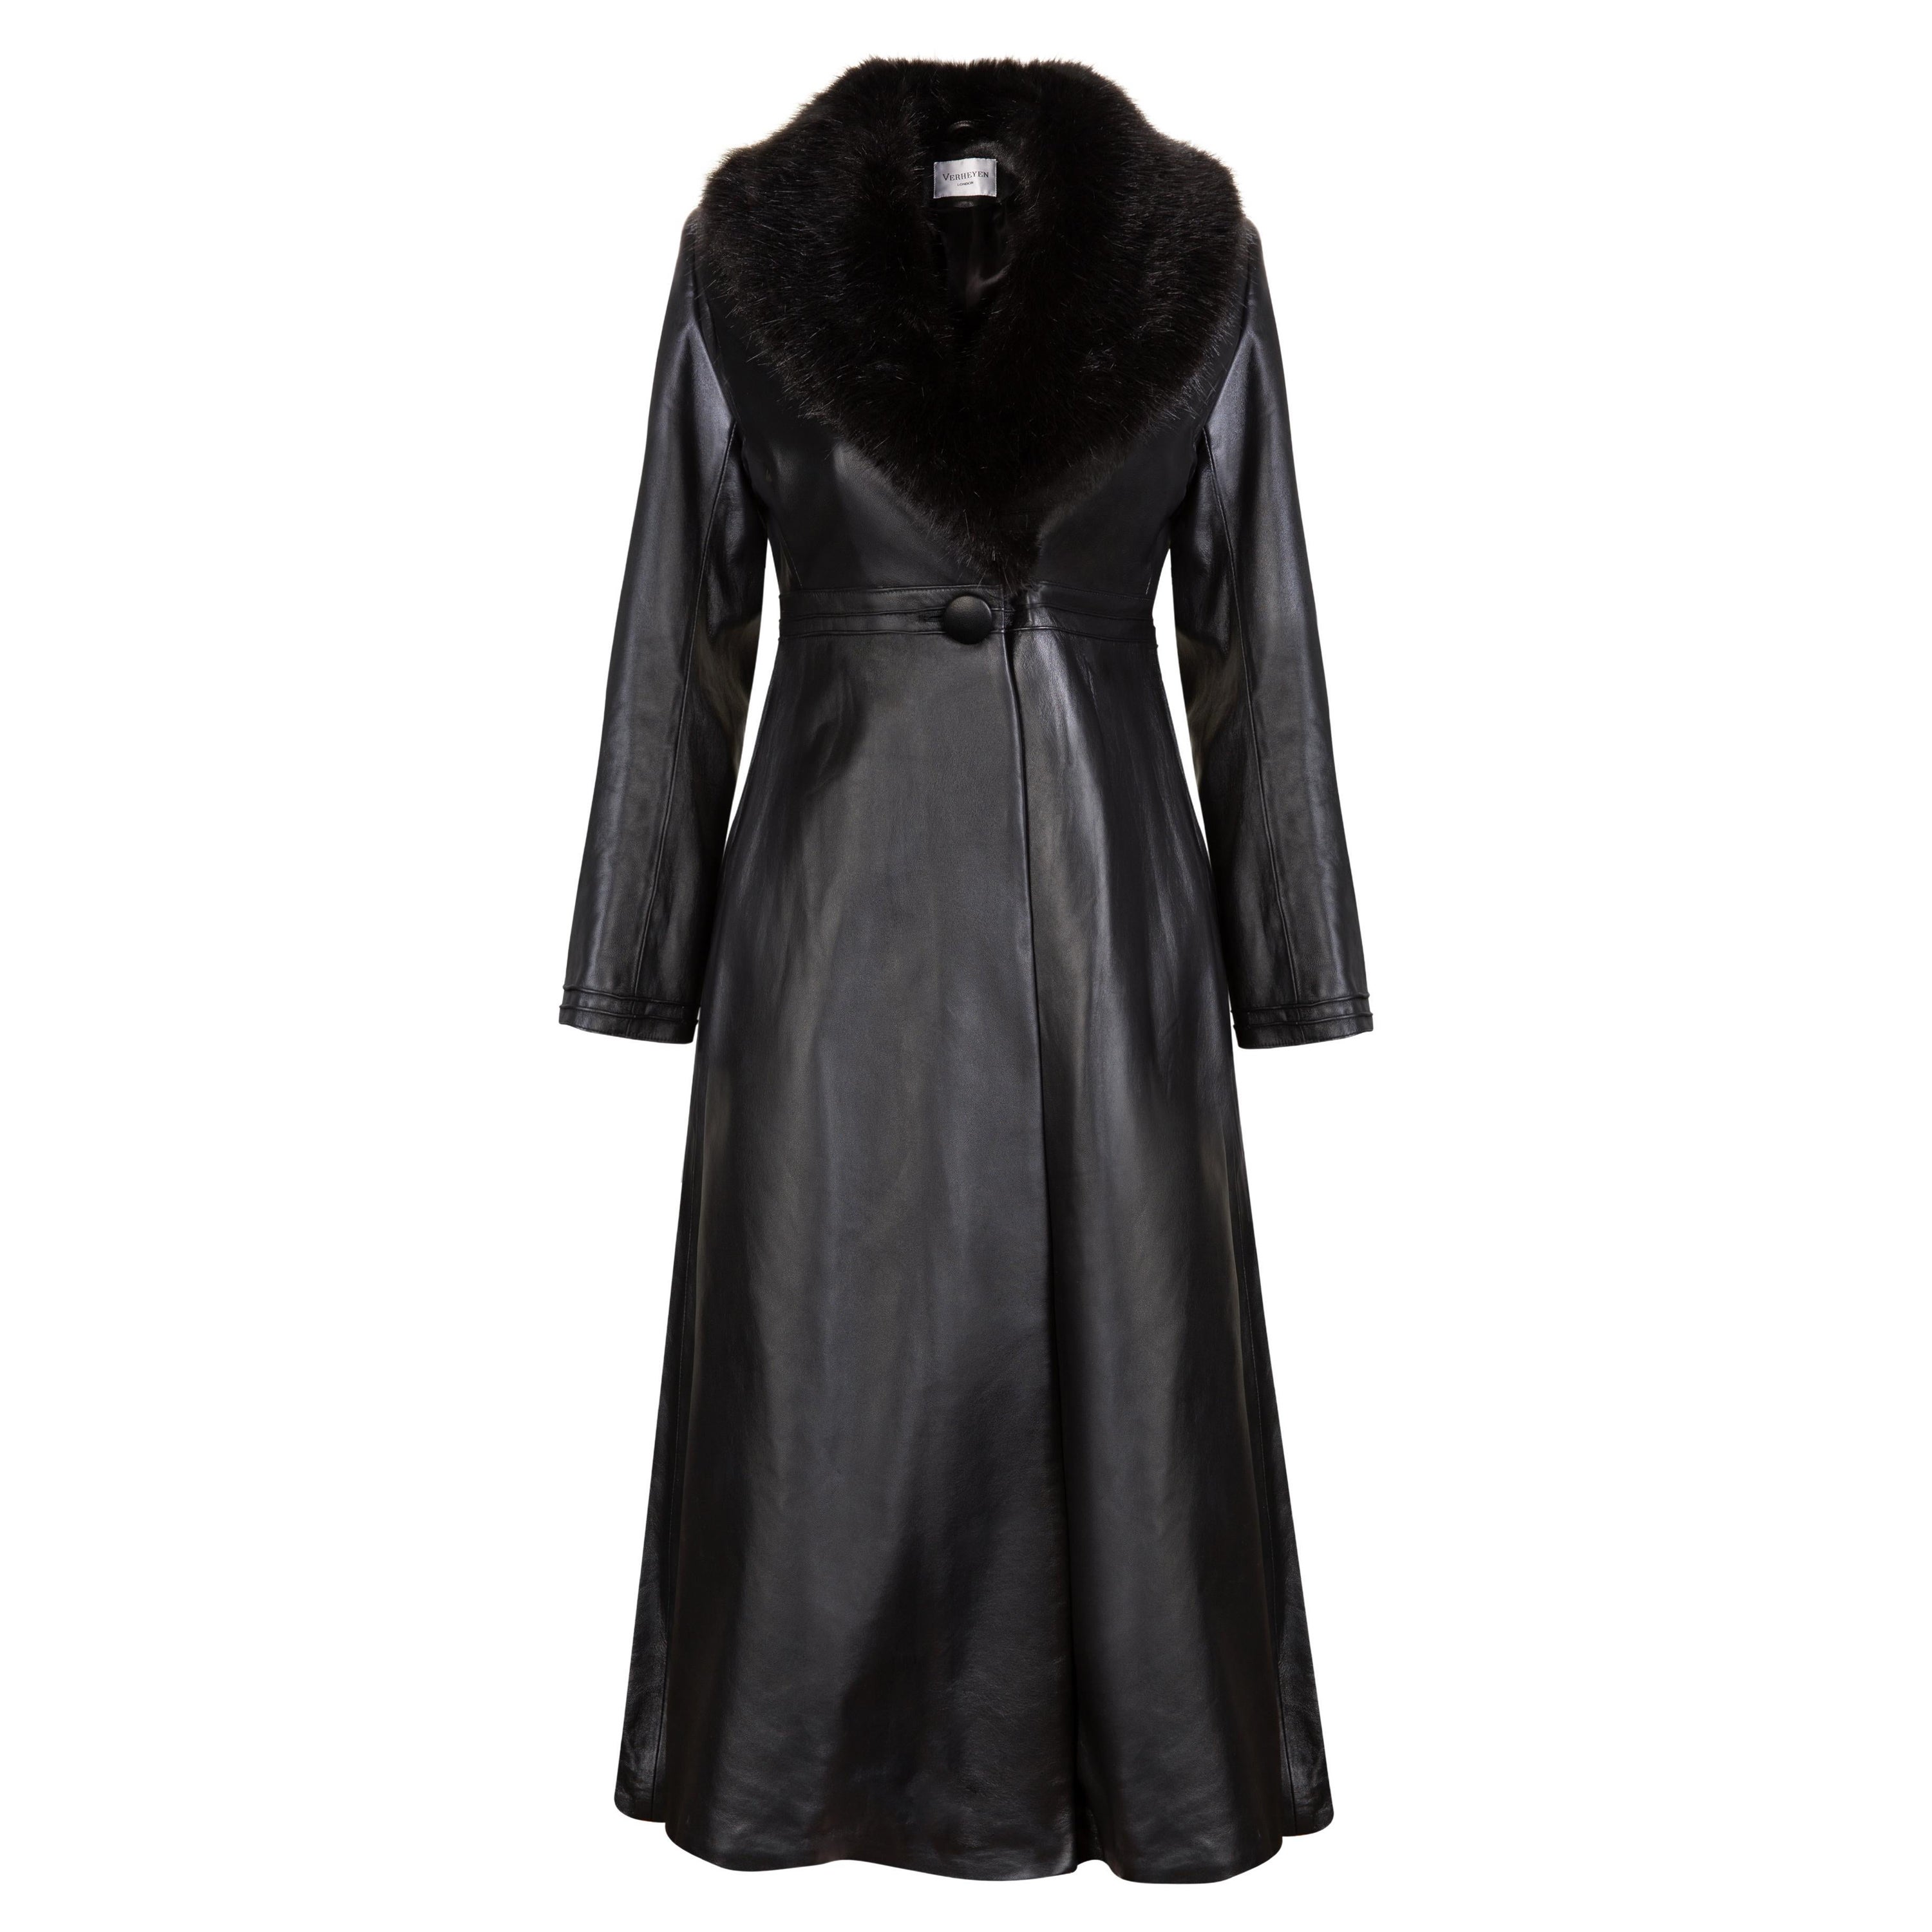 Verheyen London Edward Leather Coat with Faux Fur Collar in Black - Size uk 16